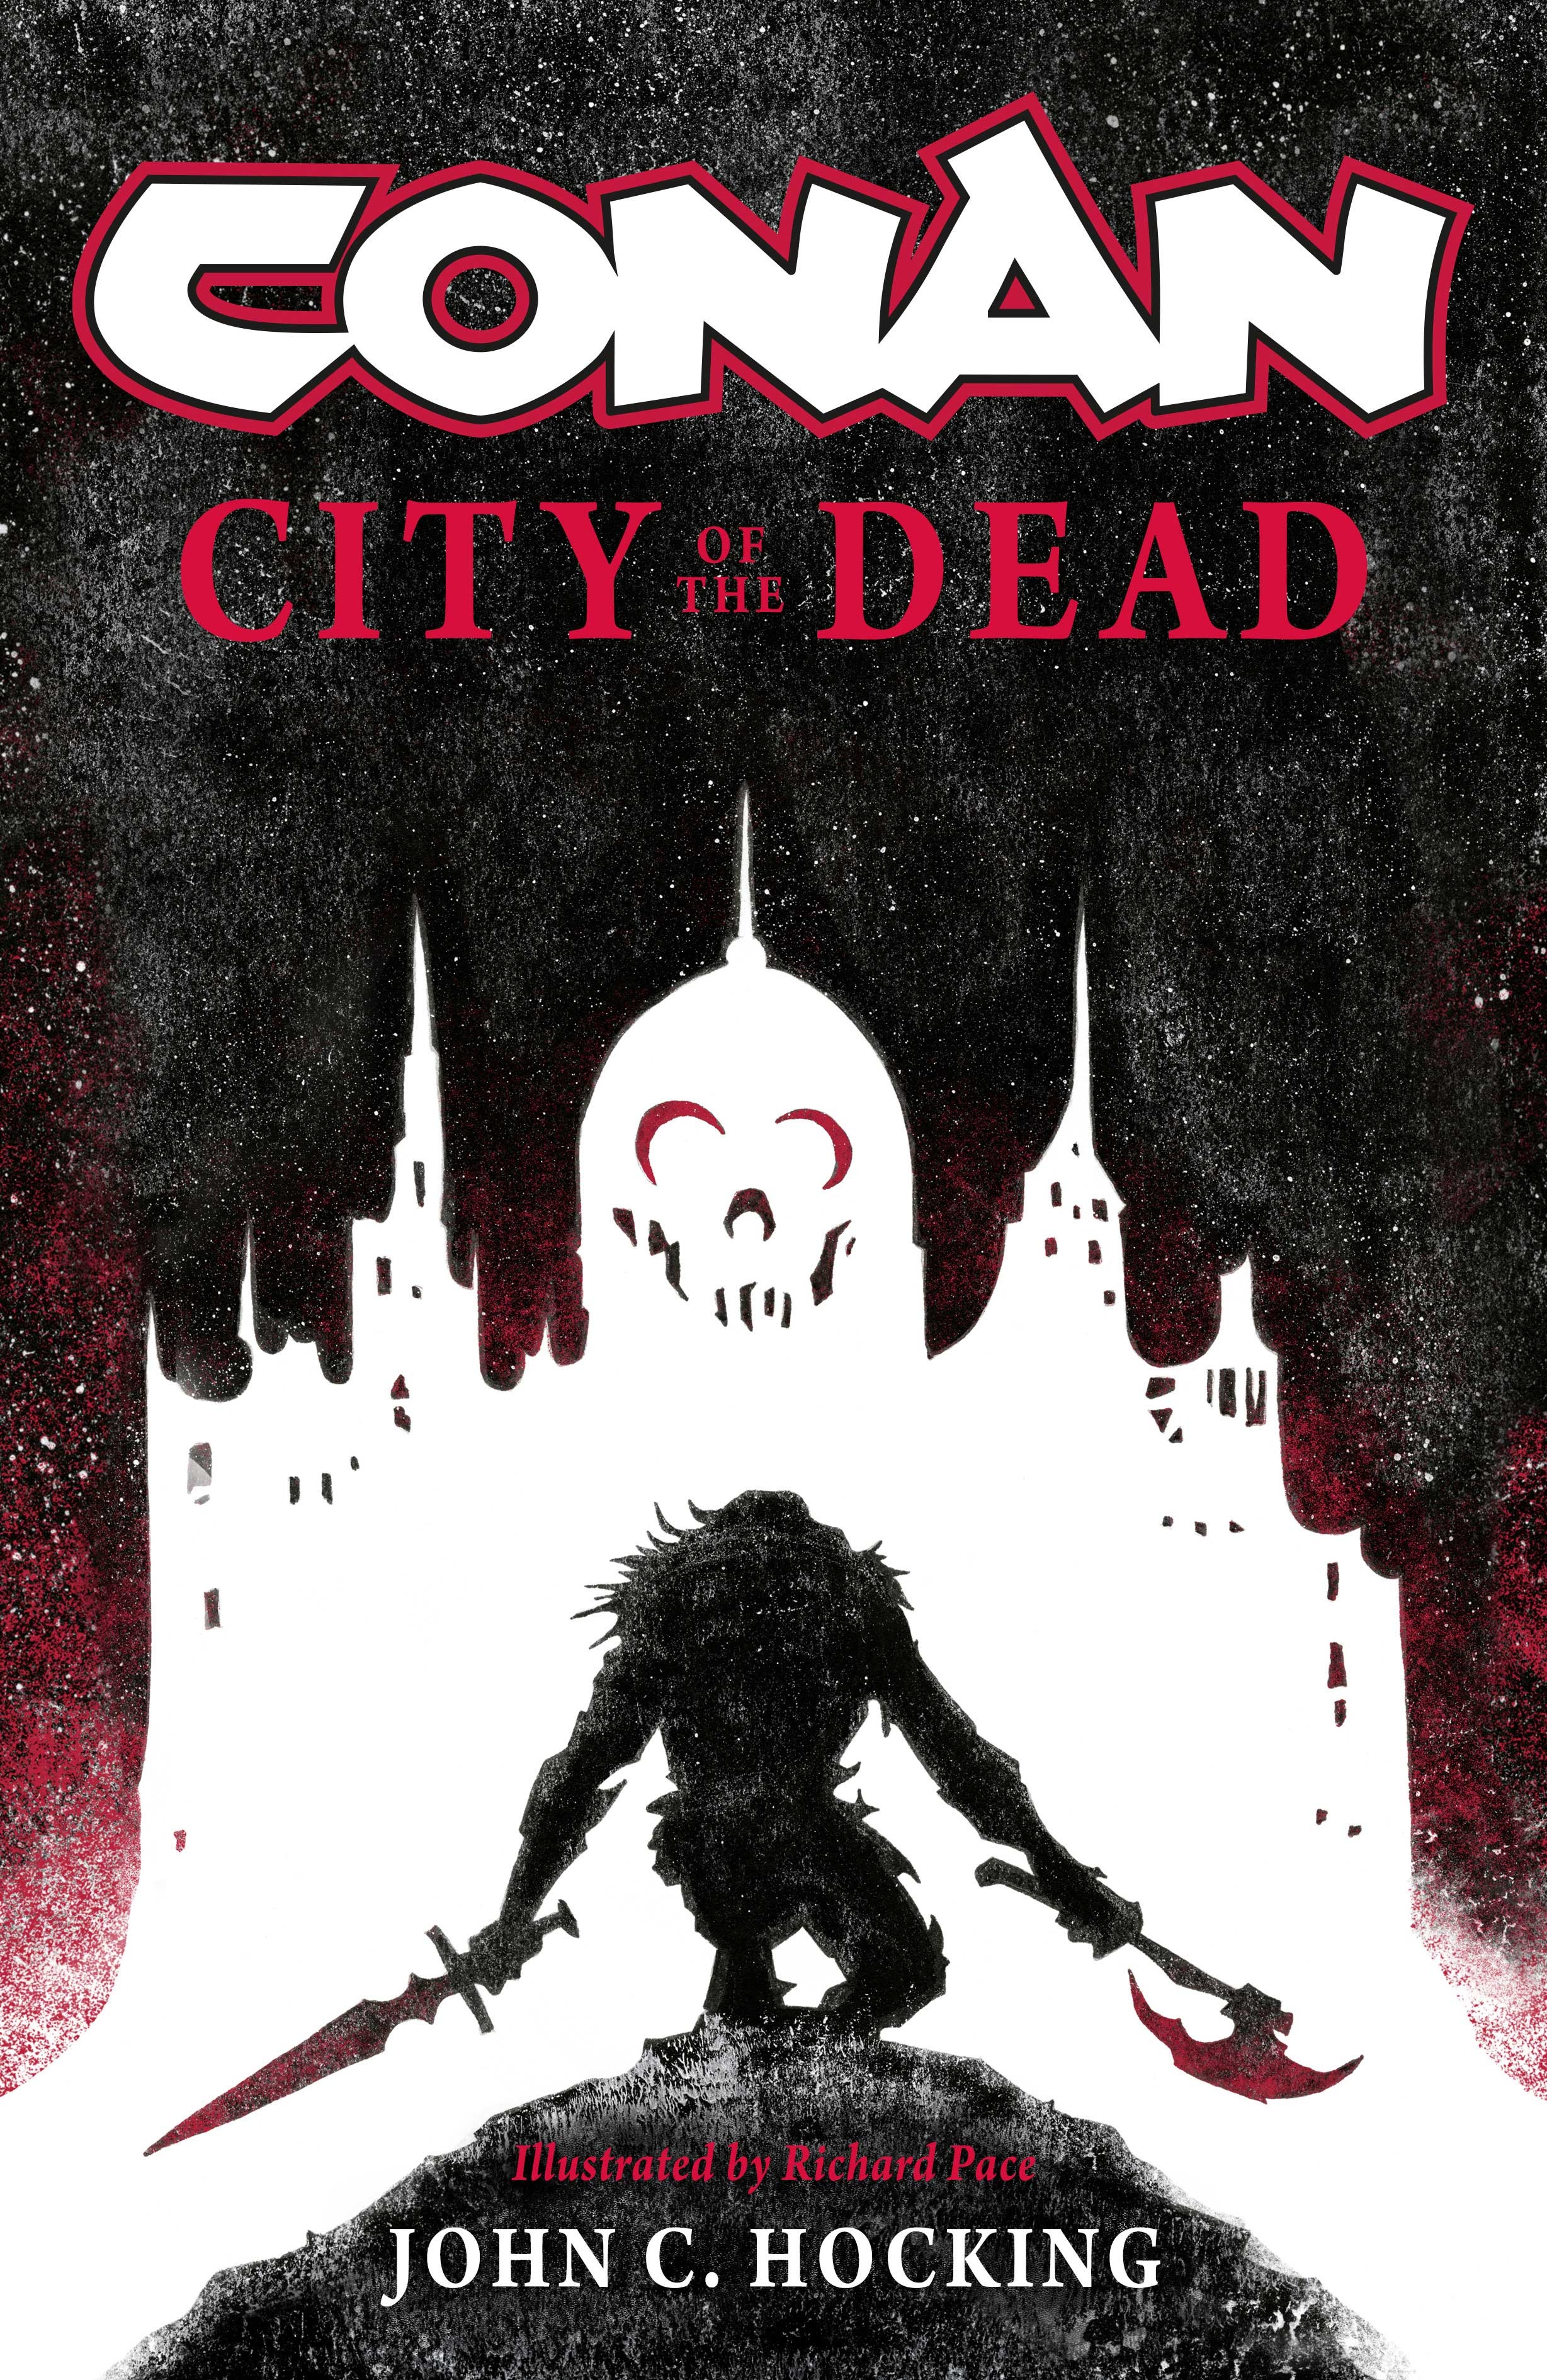 Conan City of Dead Prose Novel Soft Cover